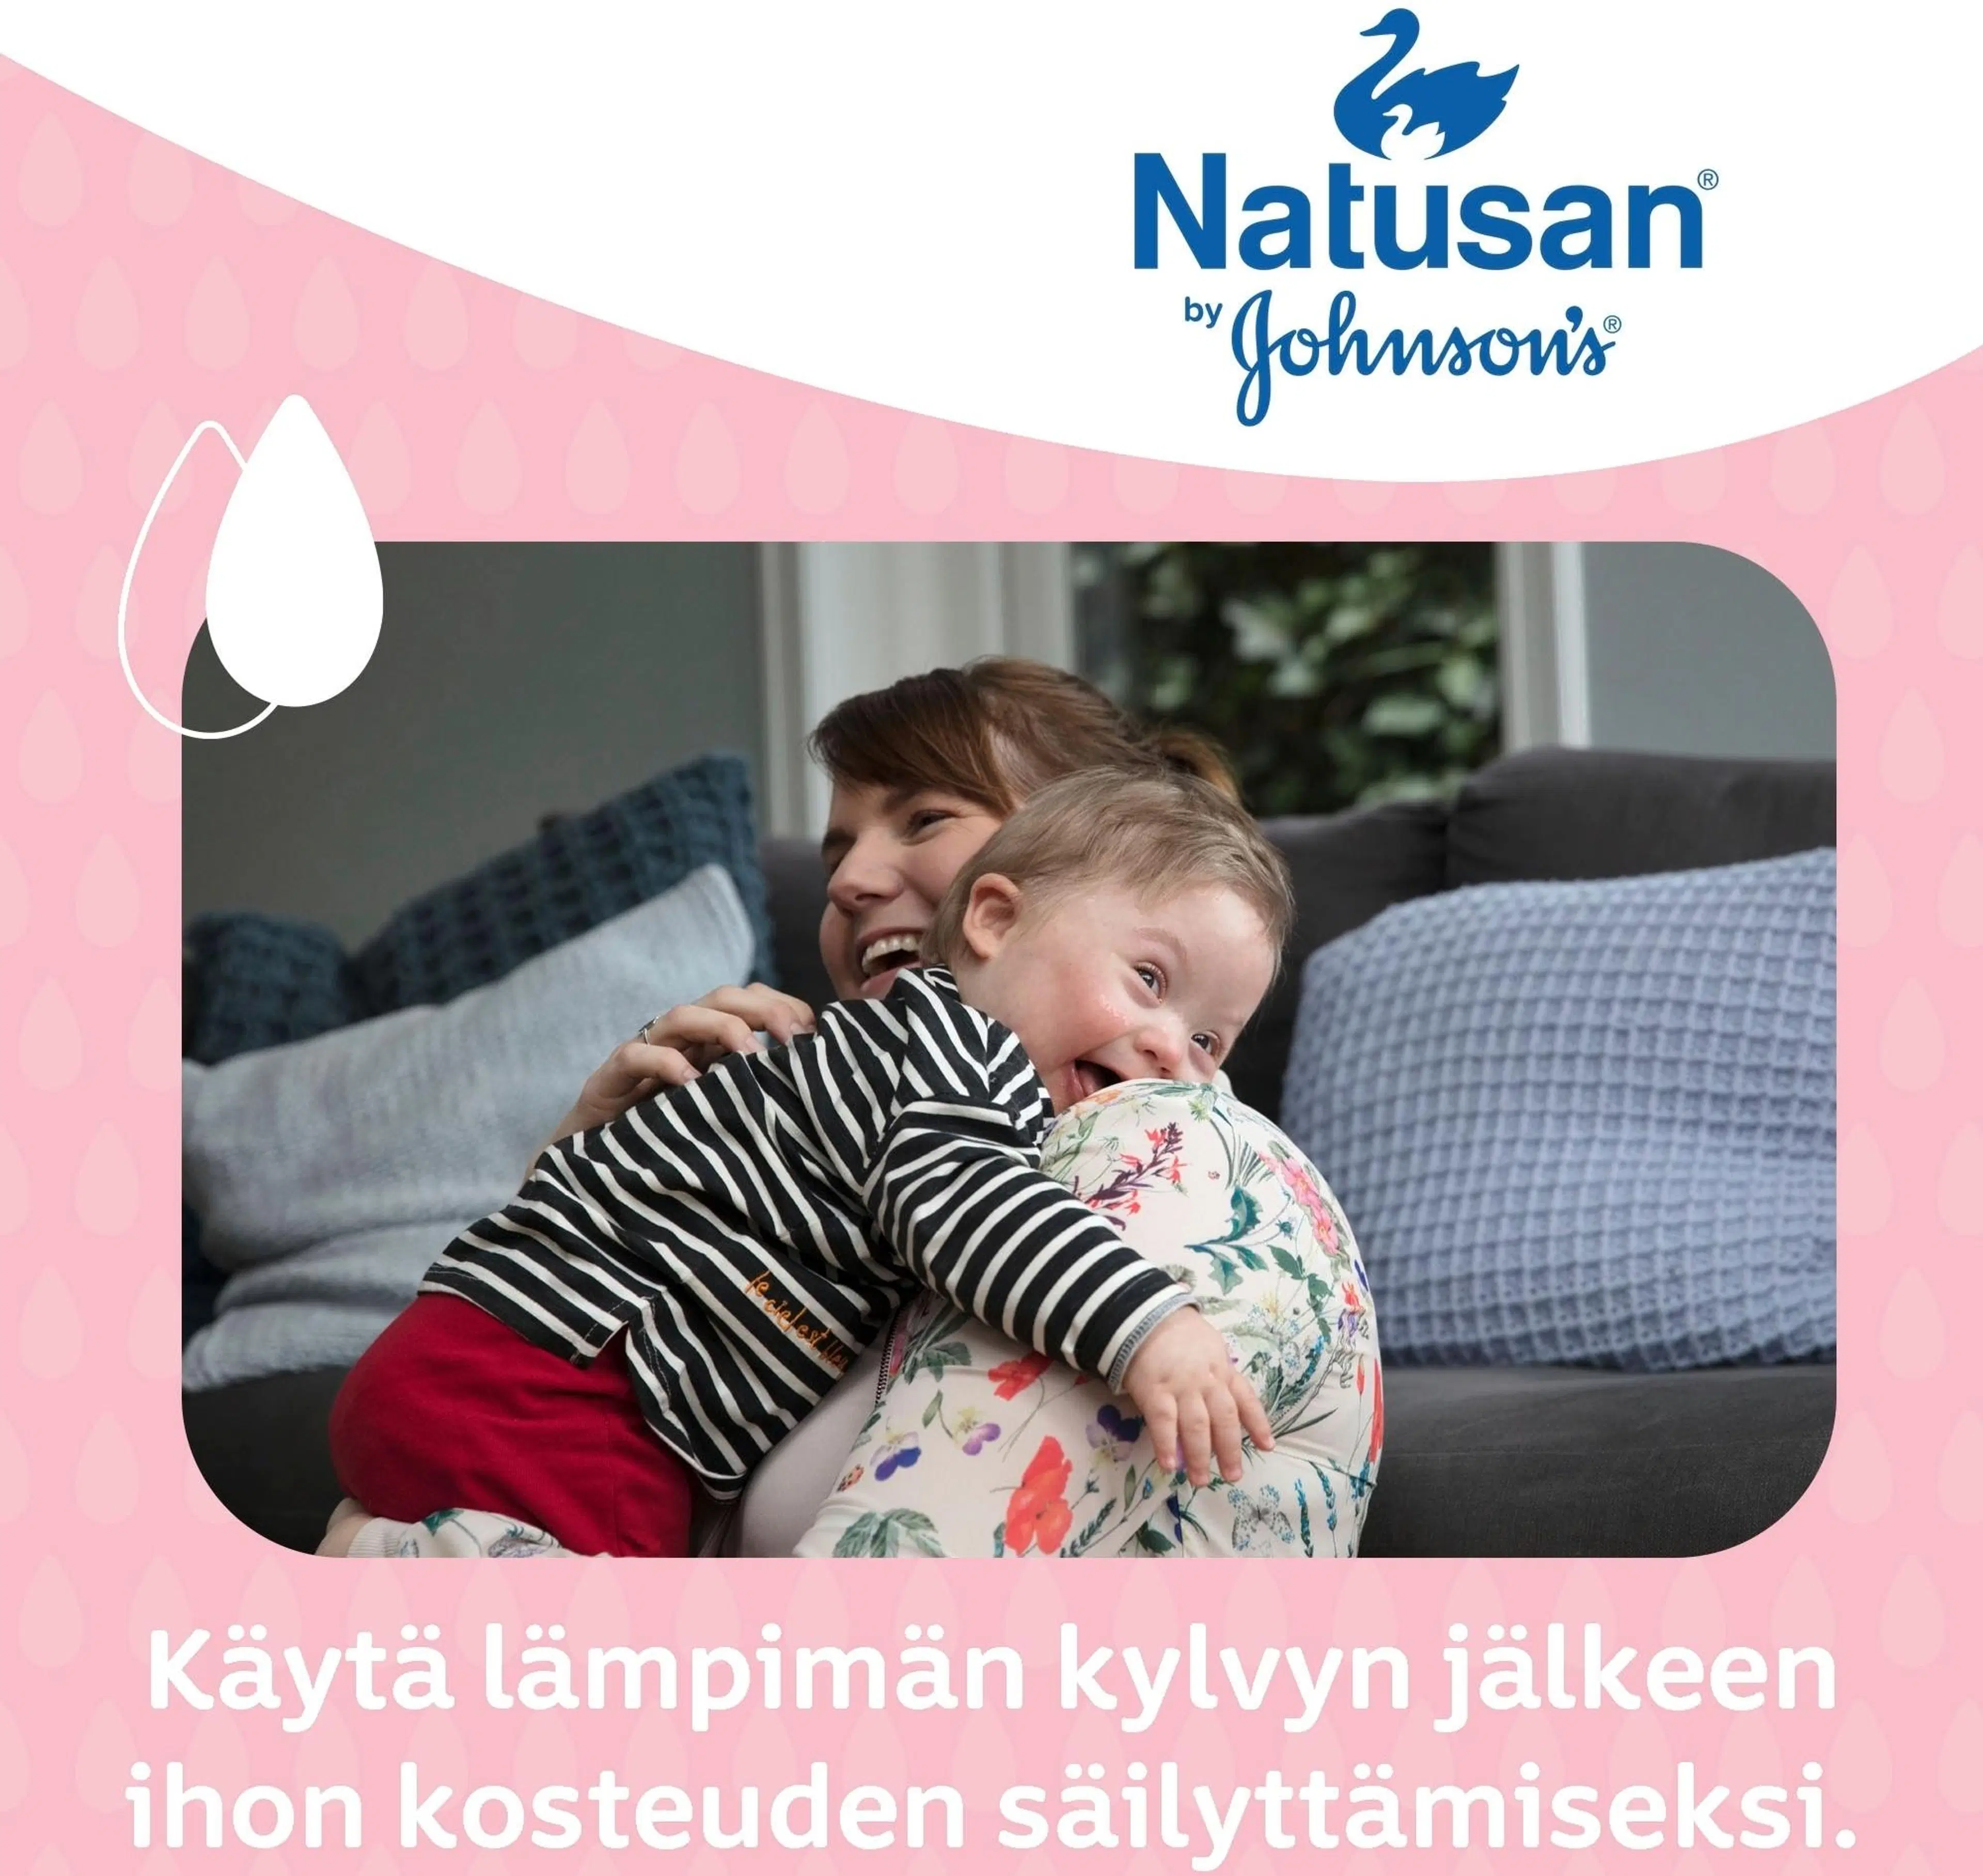 Natusan by Johnson's Baby Oil hoitoöljy 300ml